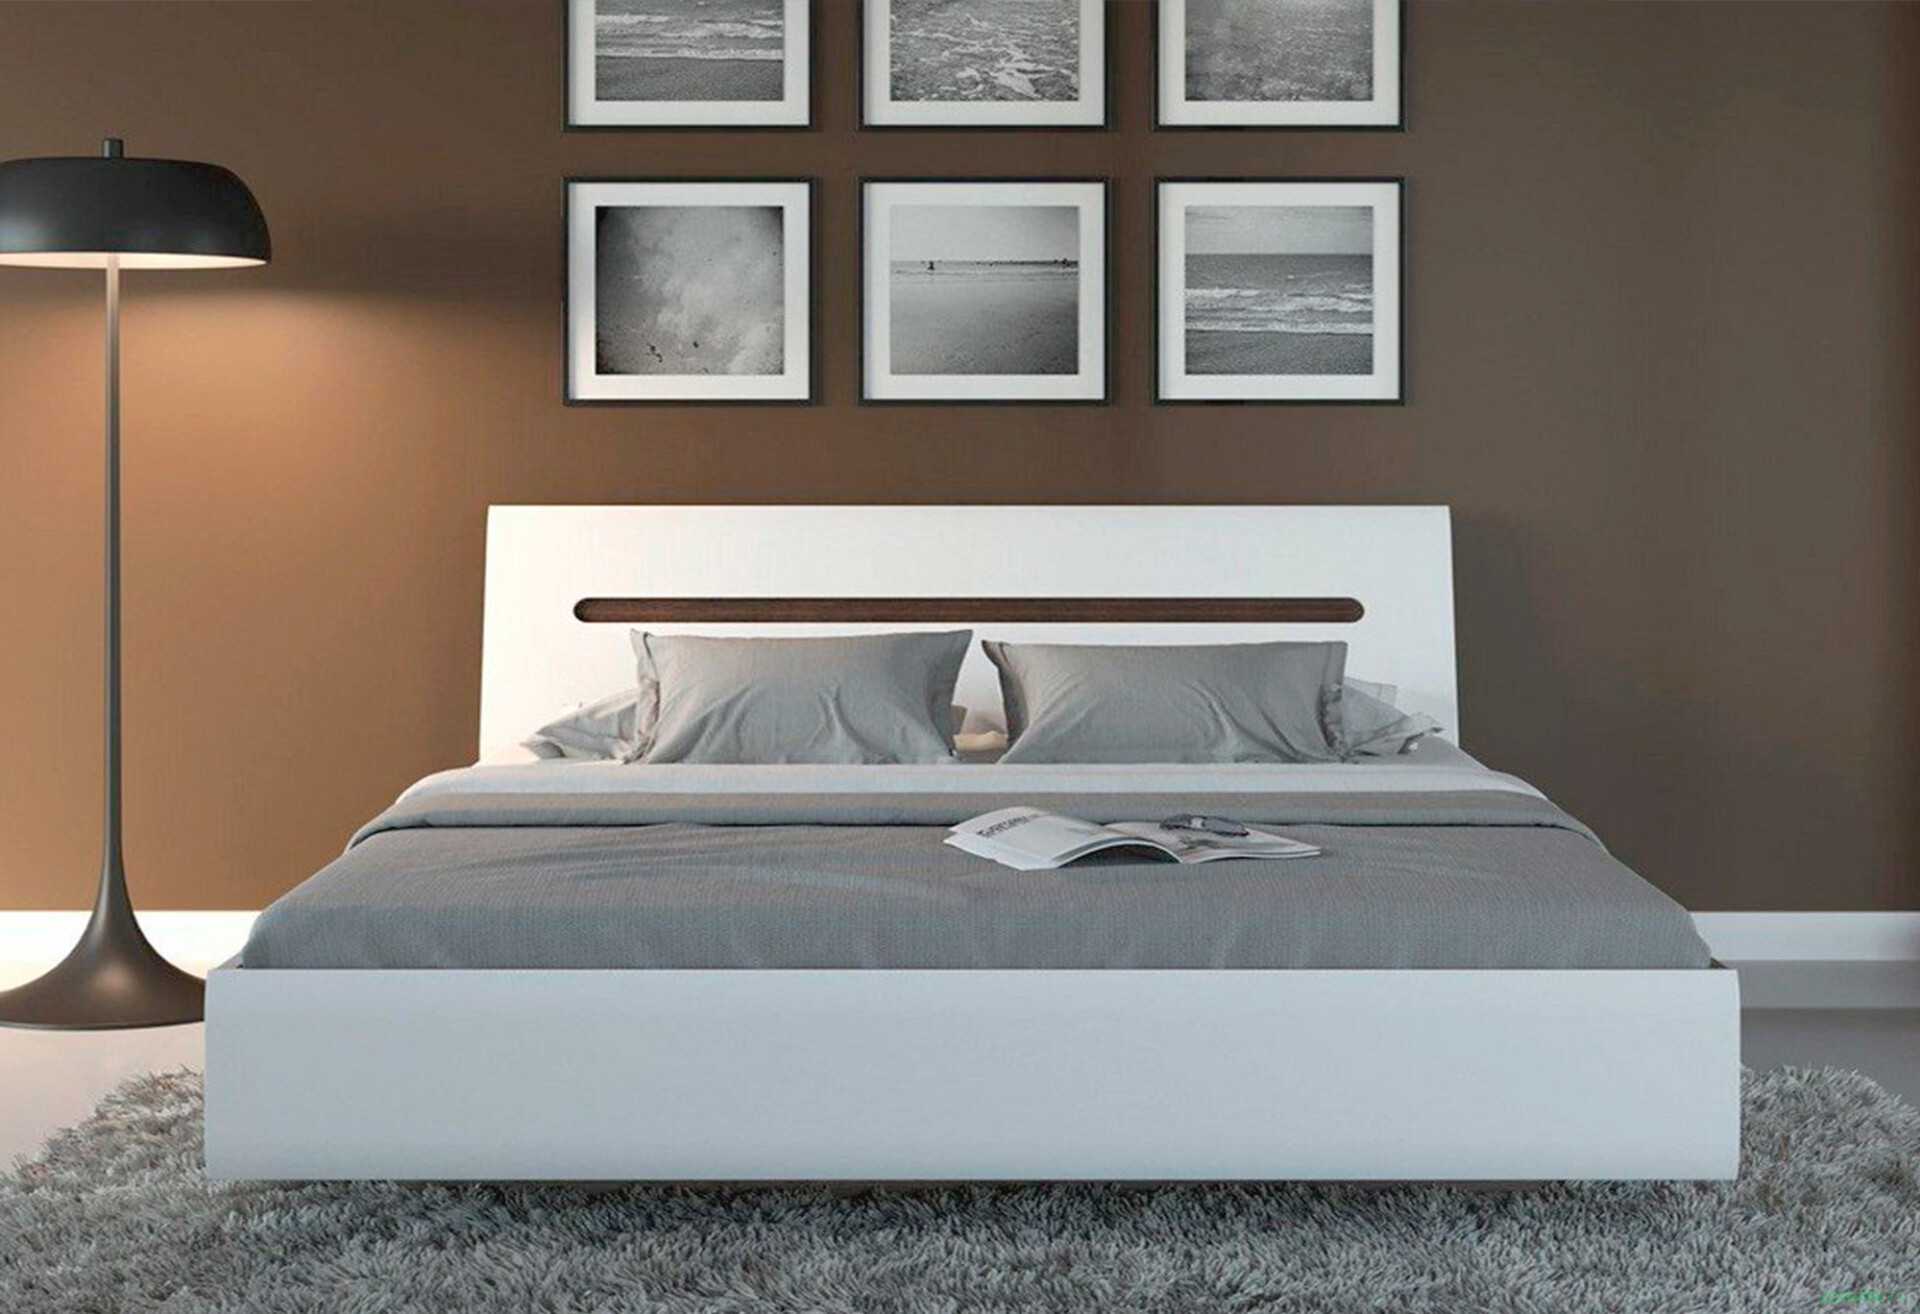 Фото 4 - Кровать ВМК Ацтека (без вклада) 160х200 см, белая